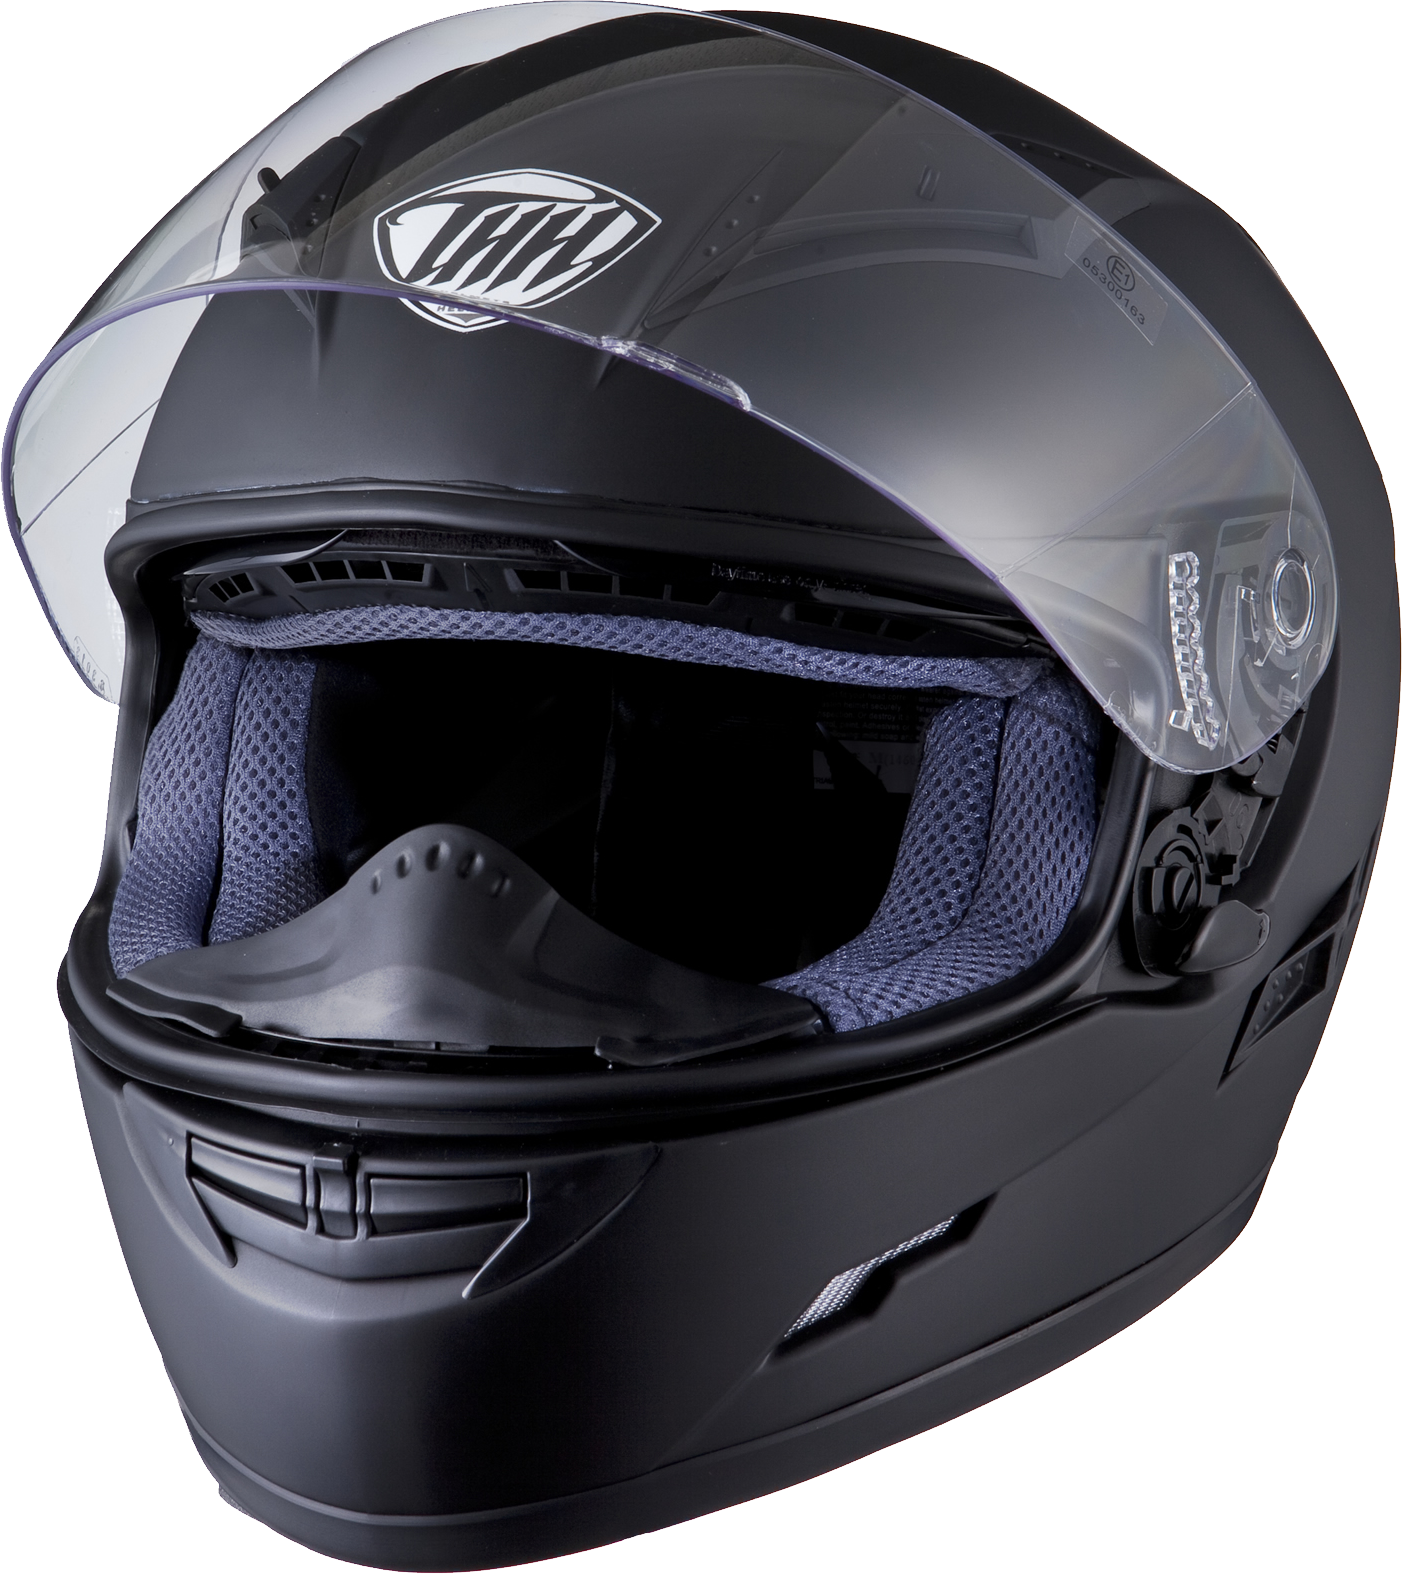 Motorcycle helmet PNG image, 